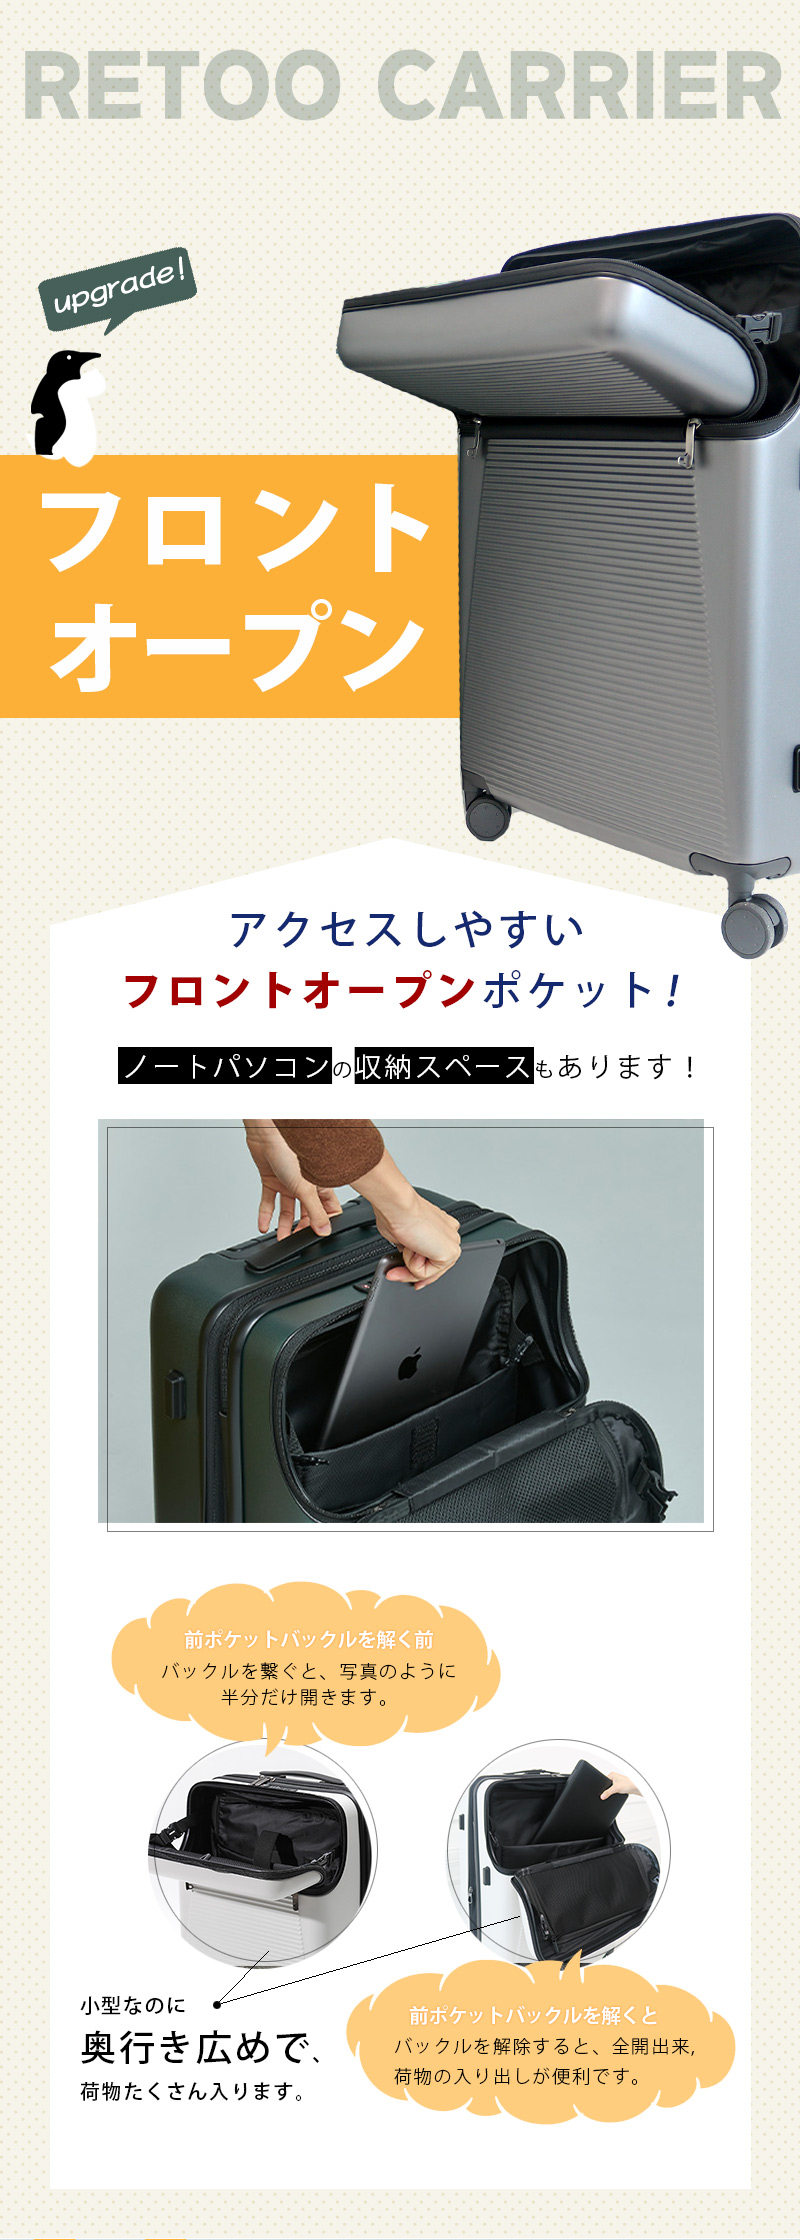 【Retoo公式】スーツケース Mサイズ フロントオープン PC材質 24インチ 71L 安い 軽量 おすすめ かわいい 女子旅 おしゃれ  海外 全国 旅行支援 旅行 出張バック キャリーケース 送料無料 RETOO公式